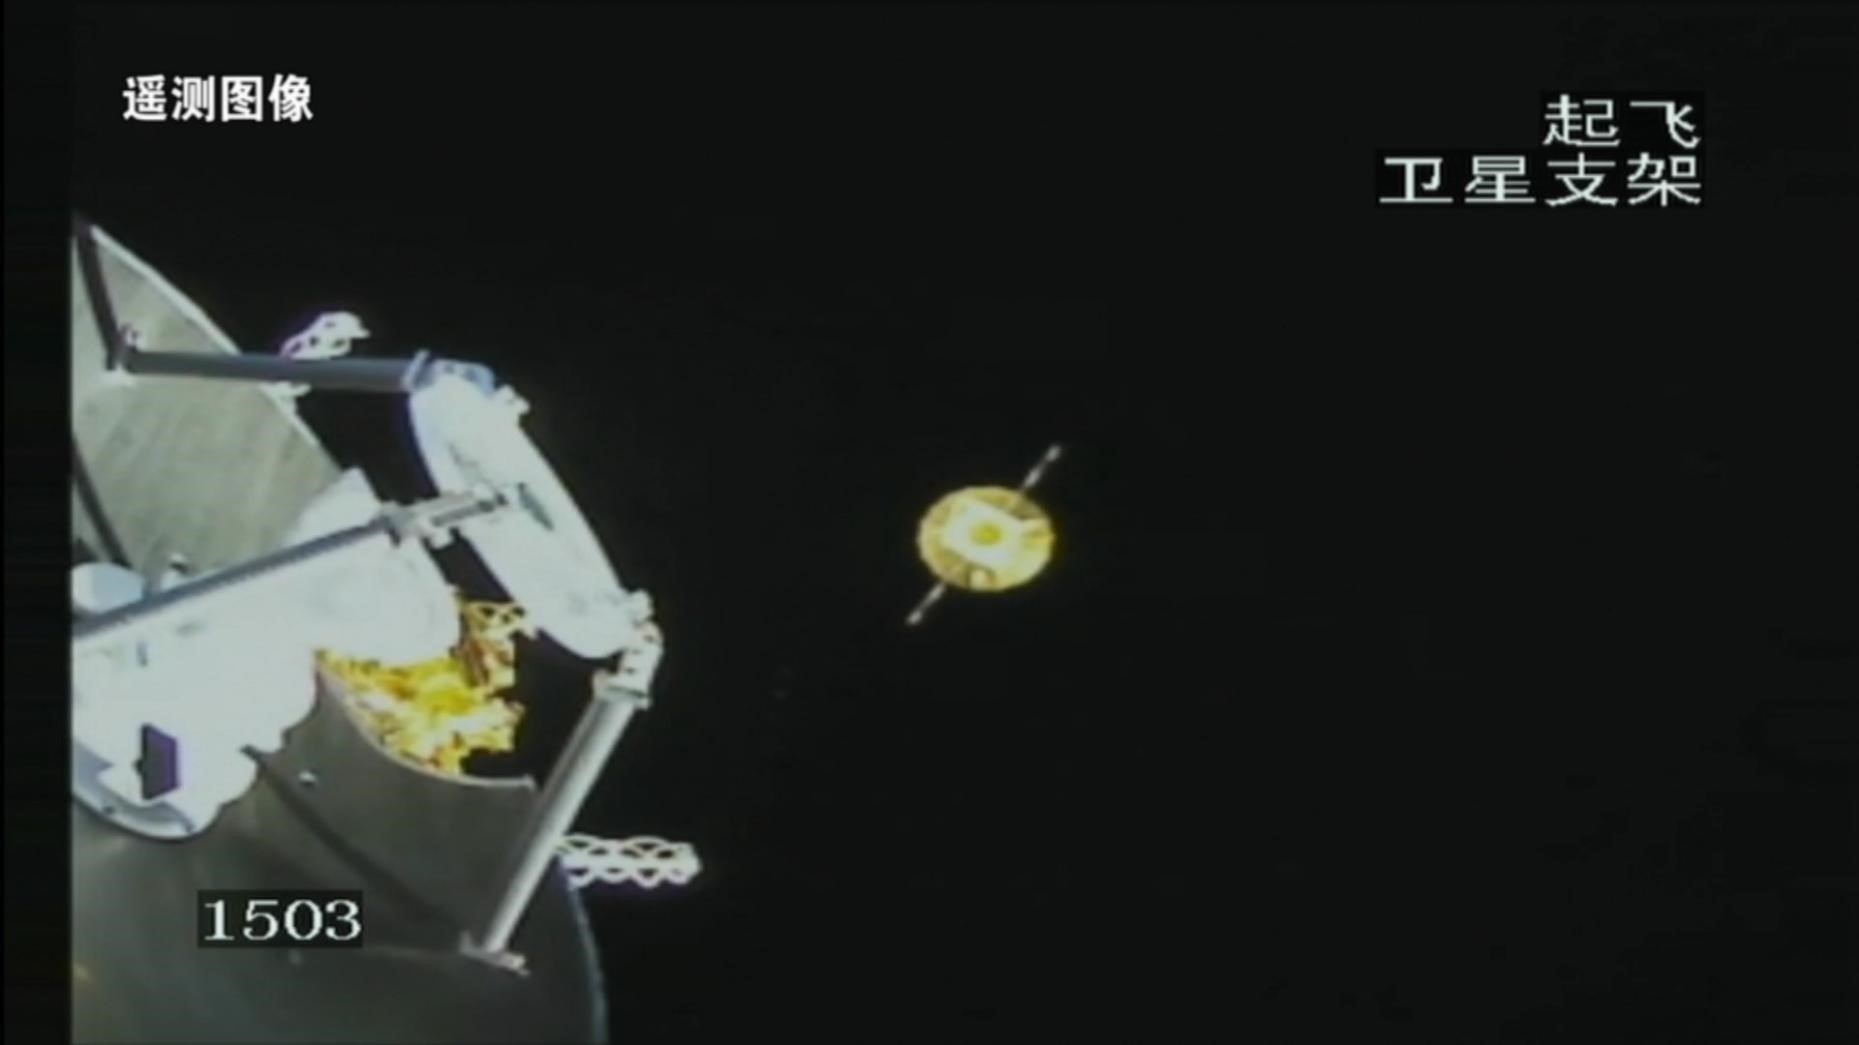 鹊桥二号中继星与运载火箭成功分离，背景中较小的天体为地球	。国家航天局供图